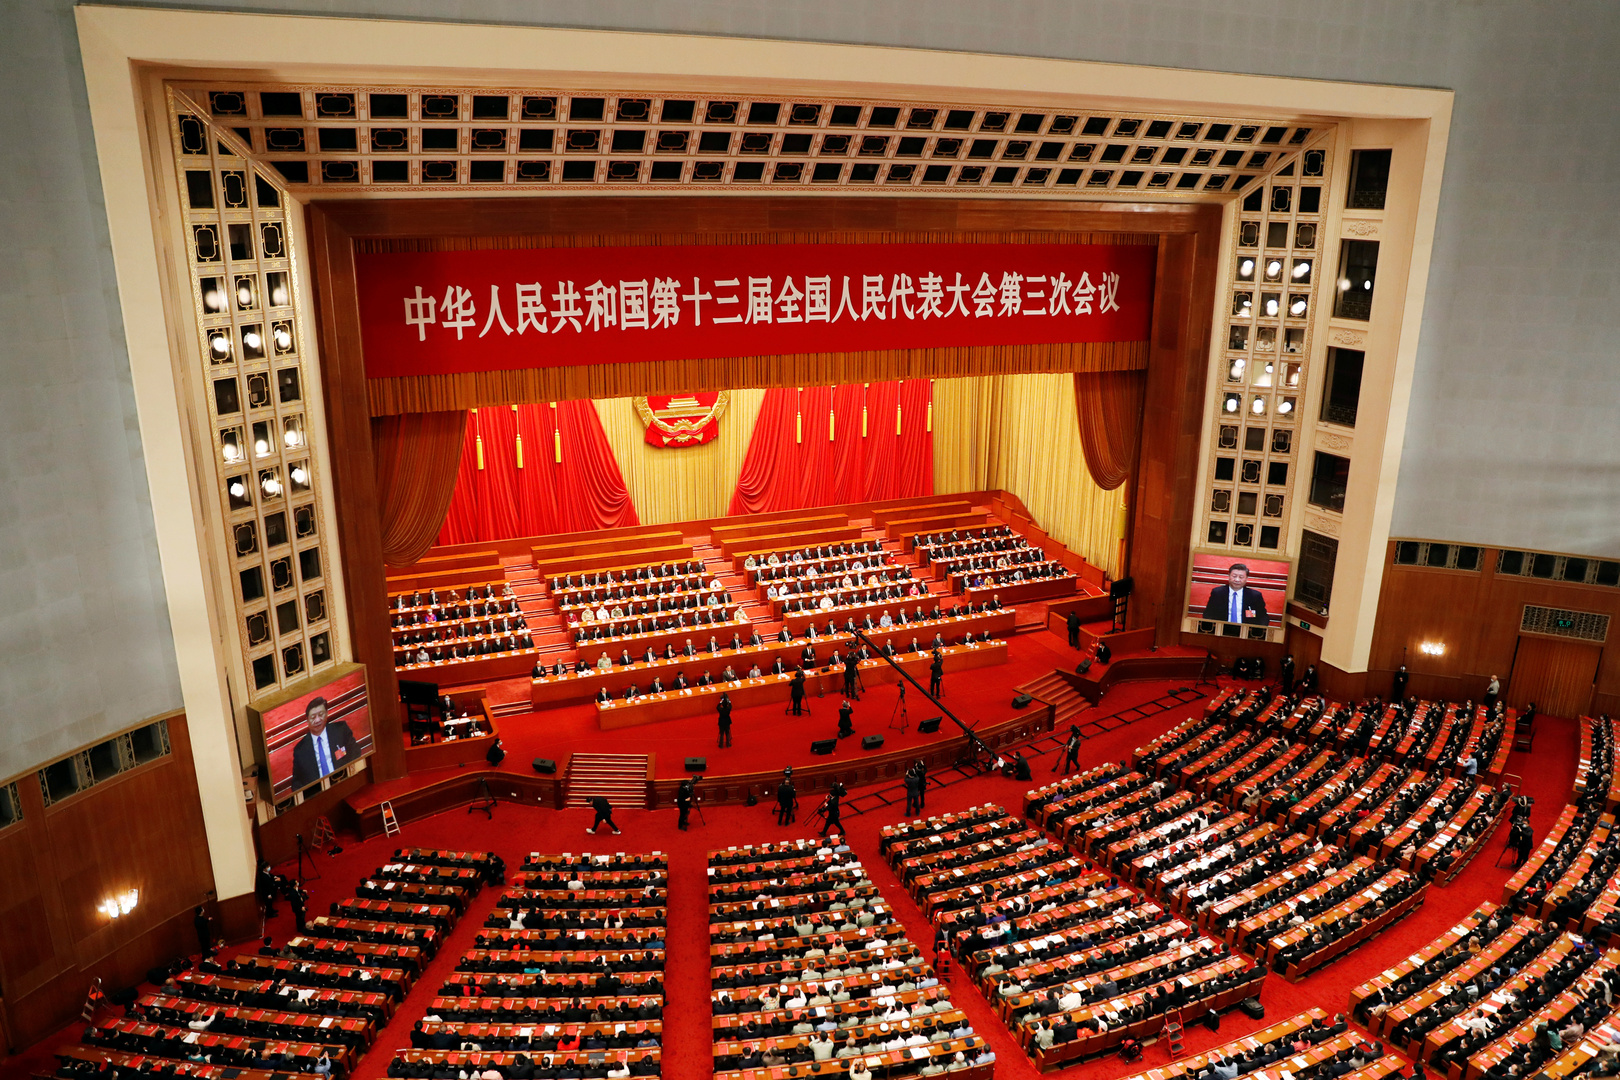 البرلمان الصيني يصدق على إعداد قوانين خاصة بالأمن القومي في هونغ كونغ